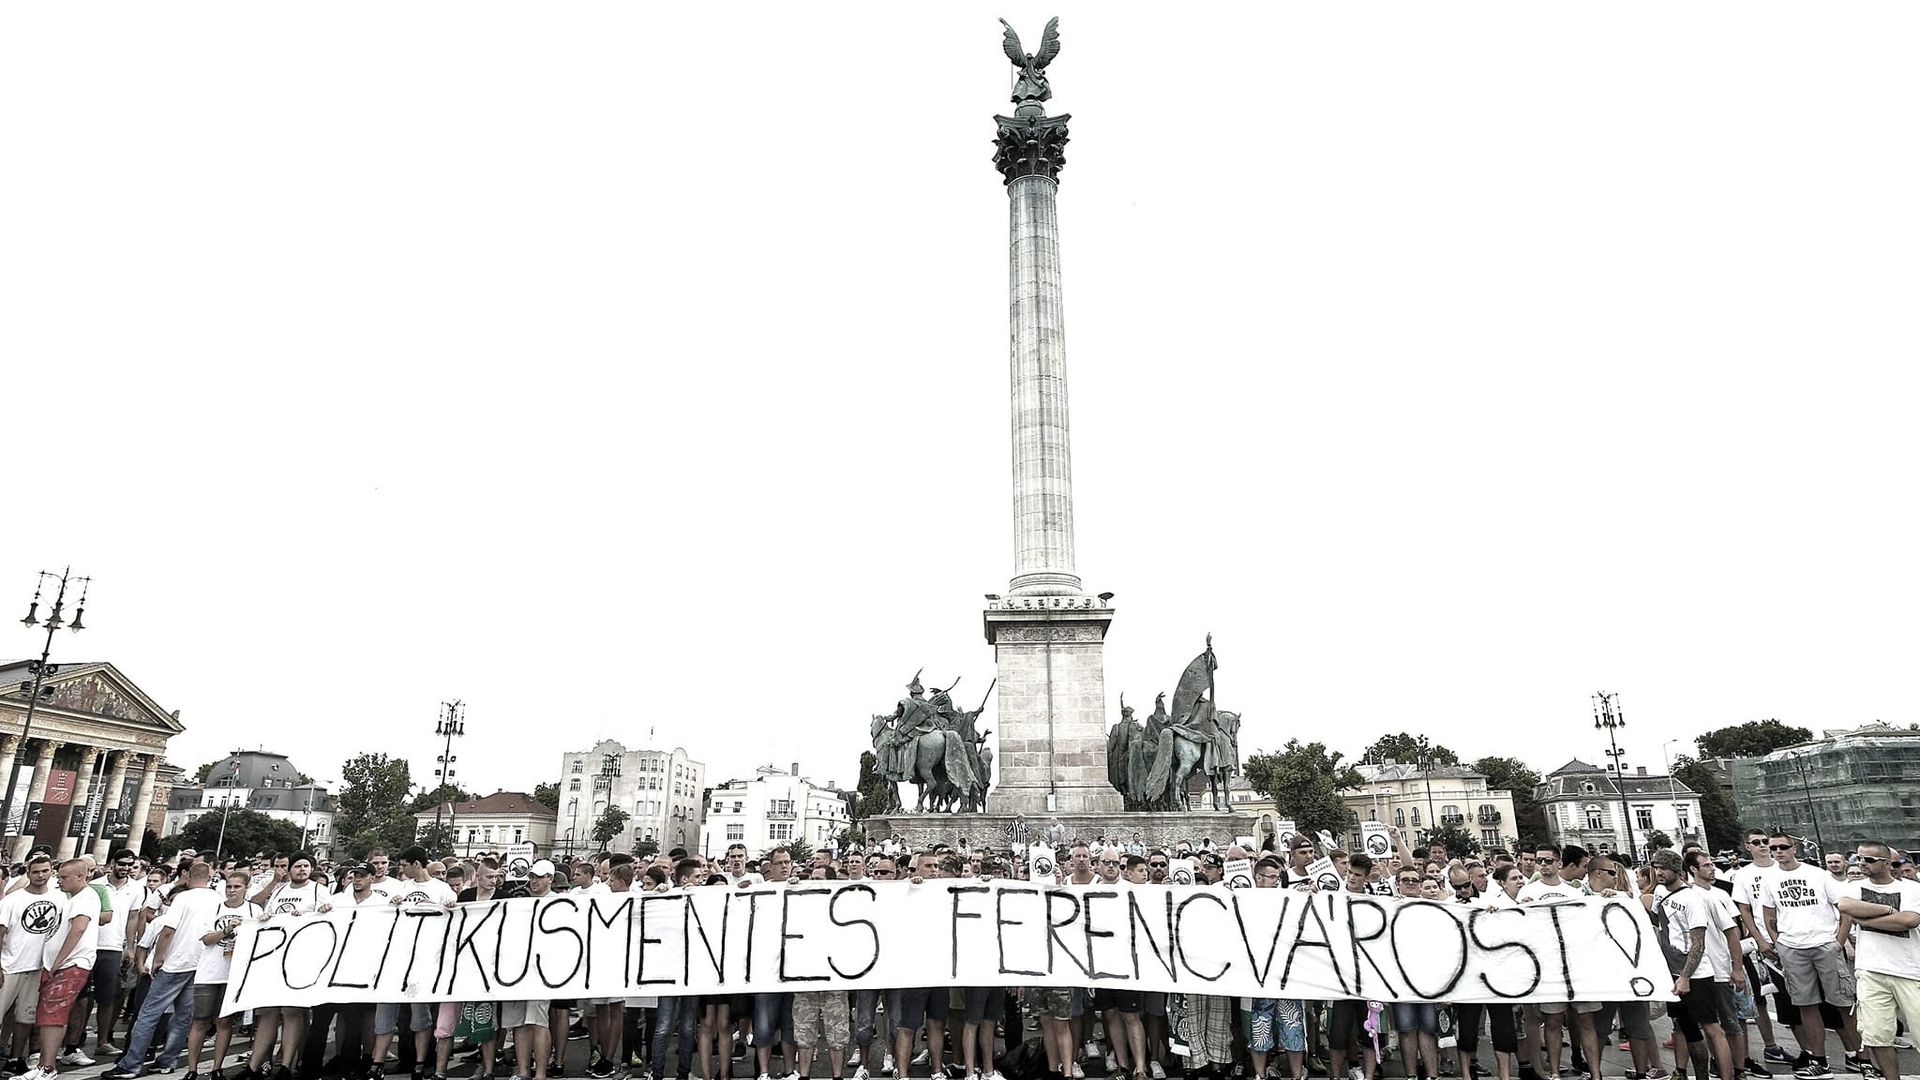 Egy korábbi, fővárosi tüntetésen készül képet is mellékeltek a diósgyőriek. (Fotó: Ultras Diósgyőr/Facebook)